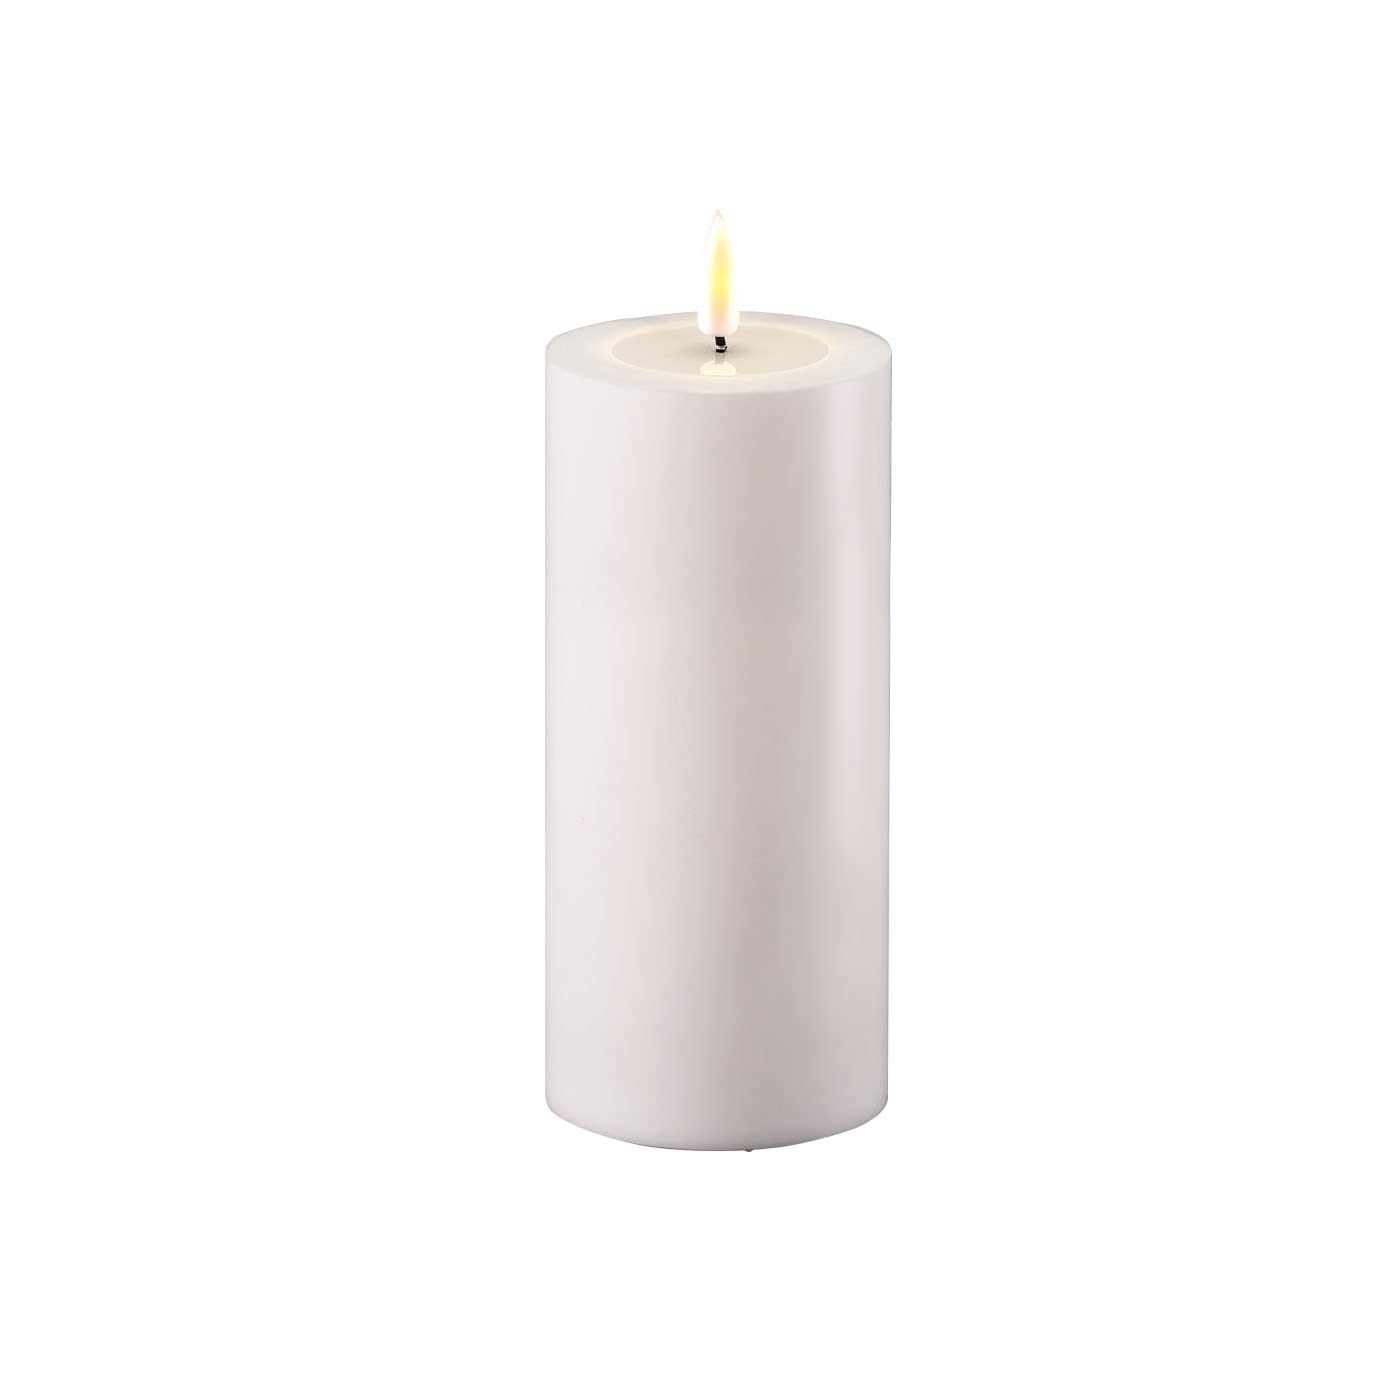 ReWu LED Kerze Deluxe Homeart, Outdoor LED Kerze (Kunststoff – Kein Echtwachs) mit realistischer Flamme, warmweißes Licht, Hitzebeständig für den Aussenbereich– (Weiß)